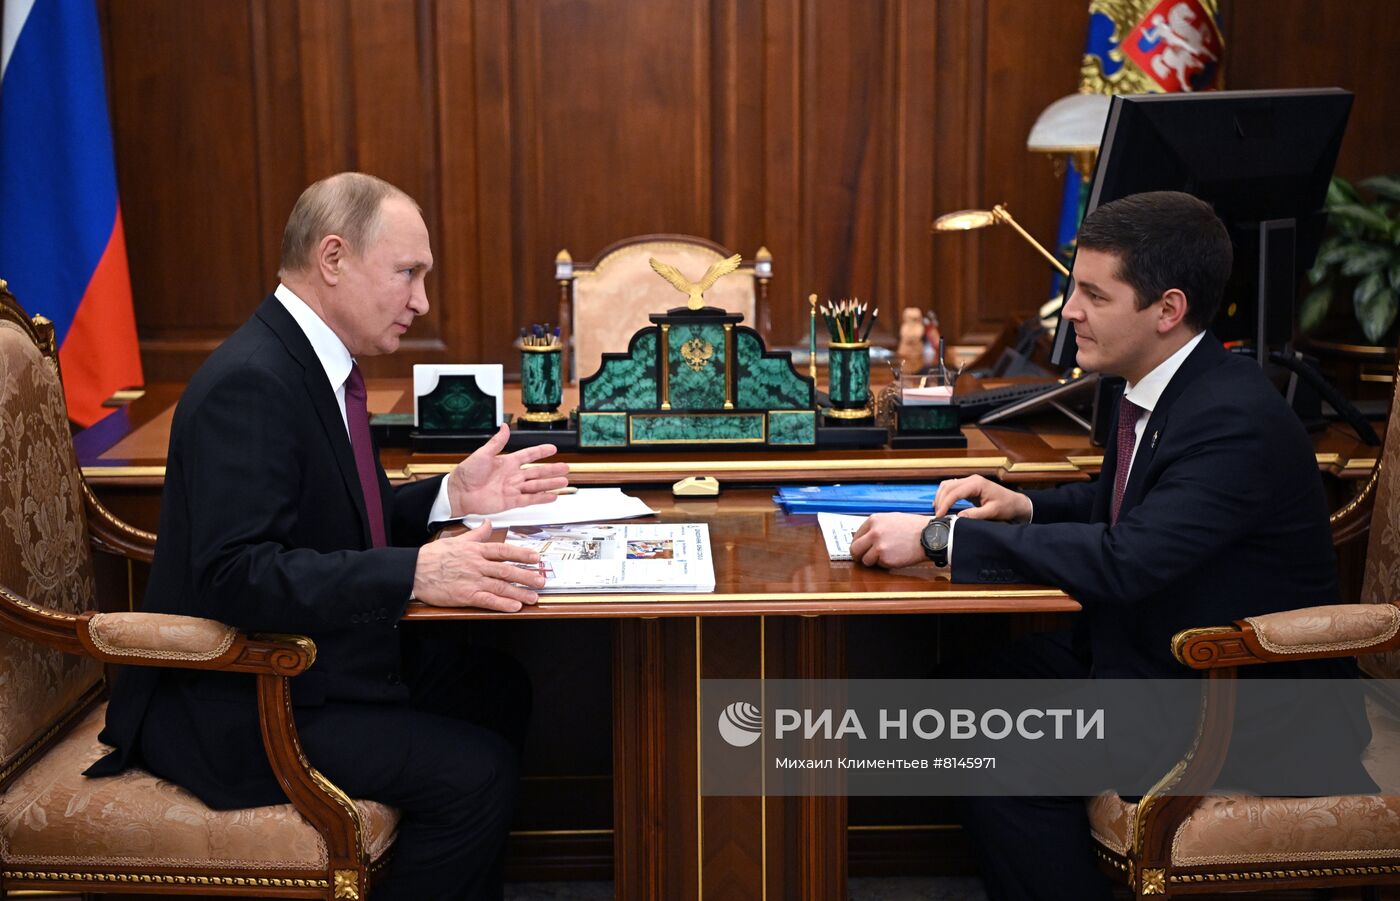 Президент РФ В. Путин встретился с губернатором Ямало-Ненецкого автономного округа Д. Артюховым